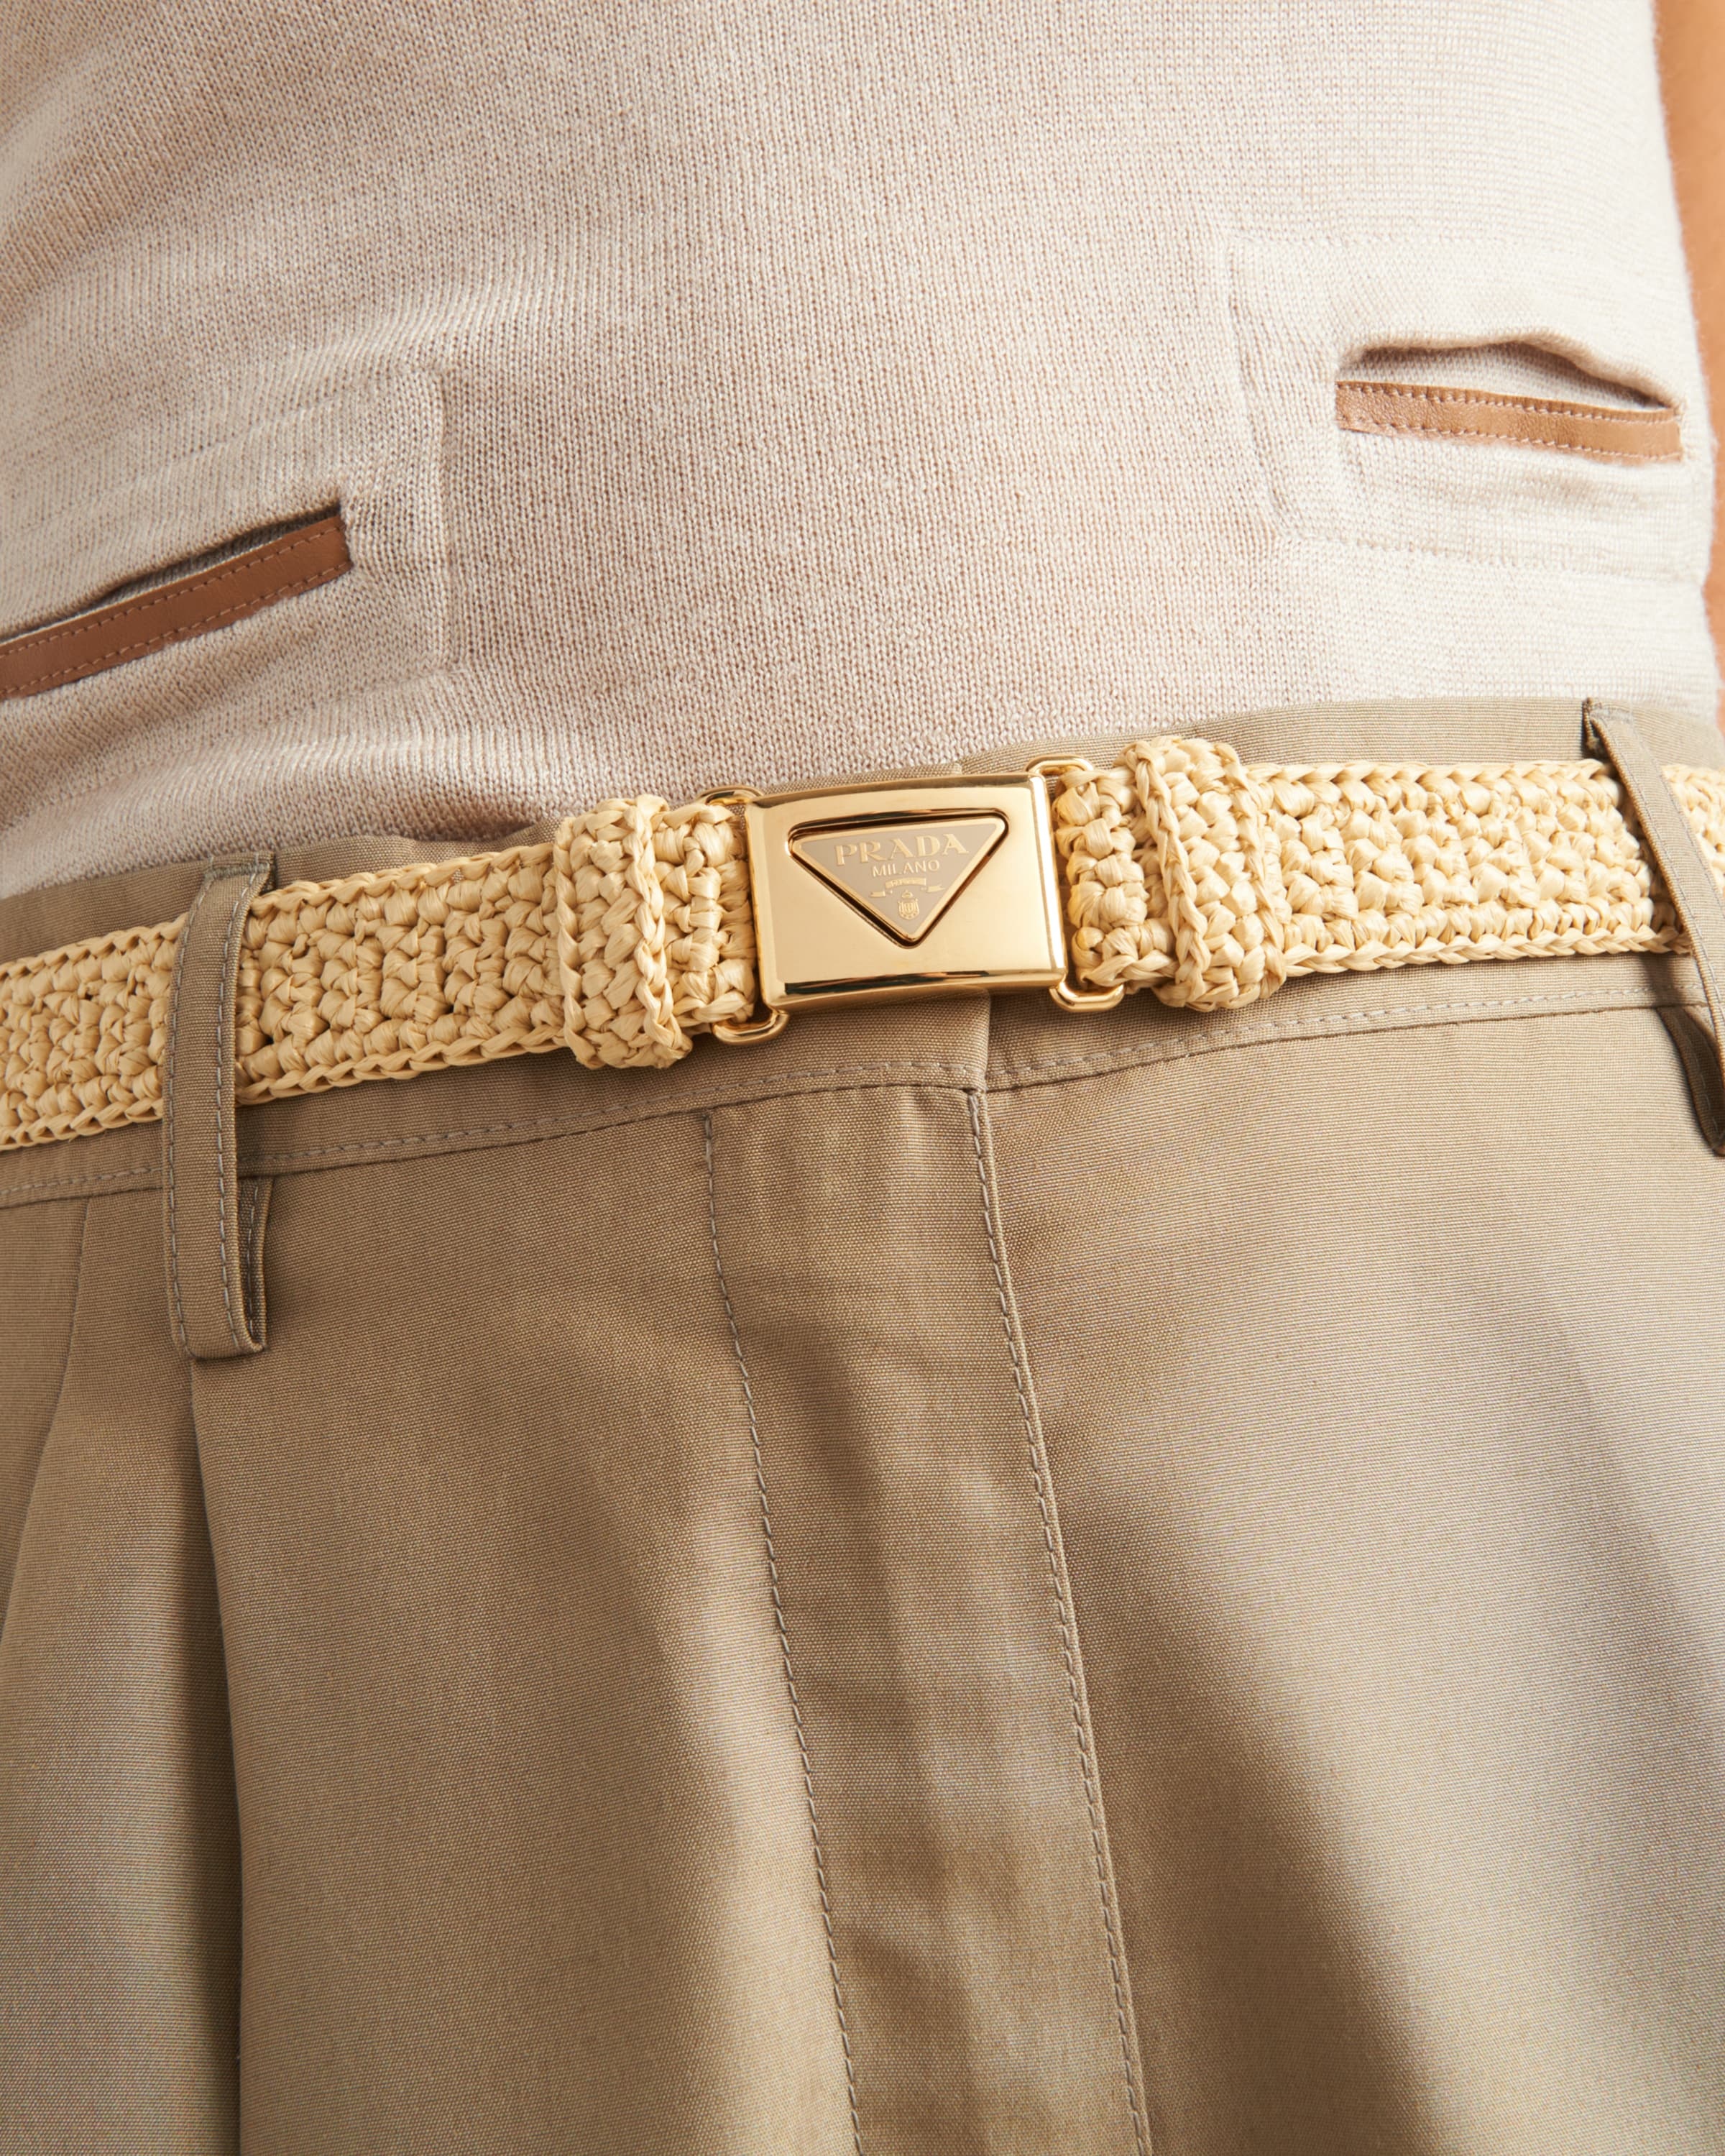 Woven fabric belt - 2